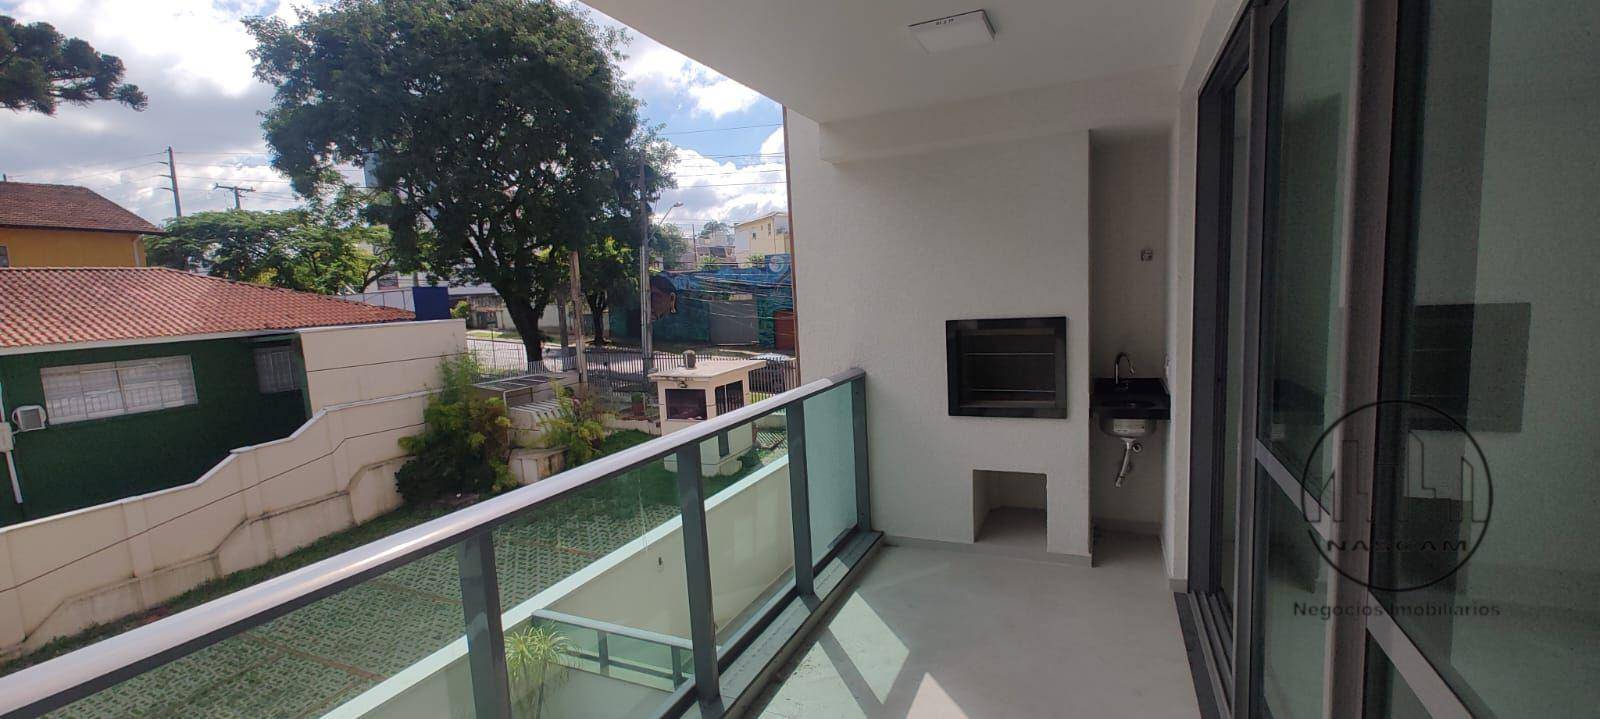 Apartamento, 2 quartos, 87 m² - Foto 2